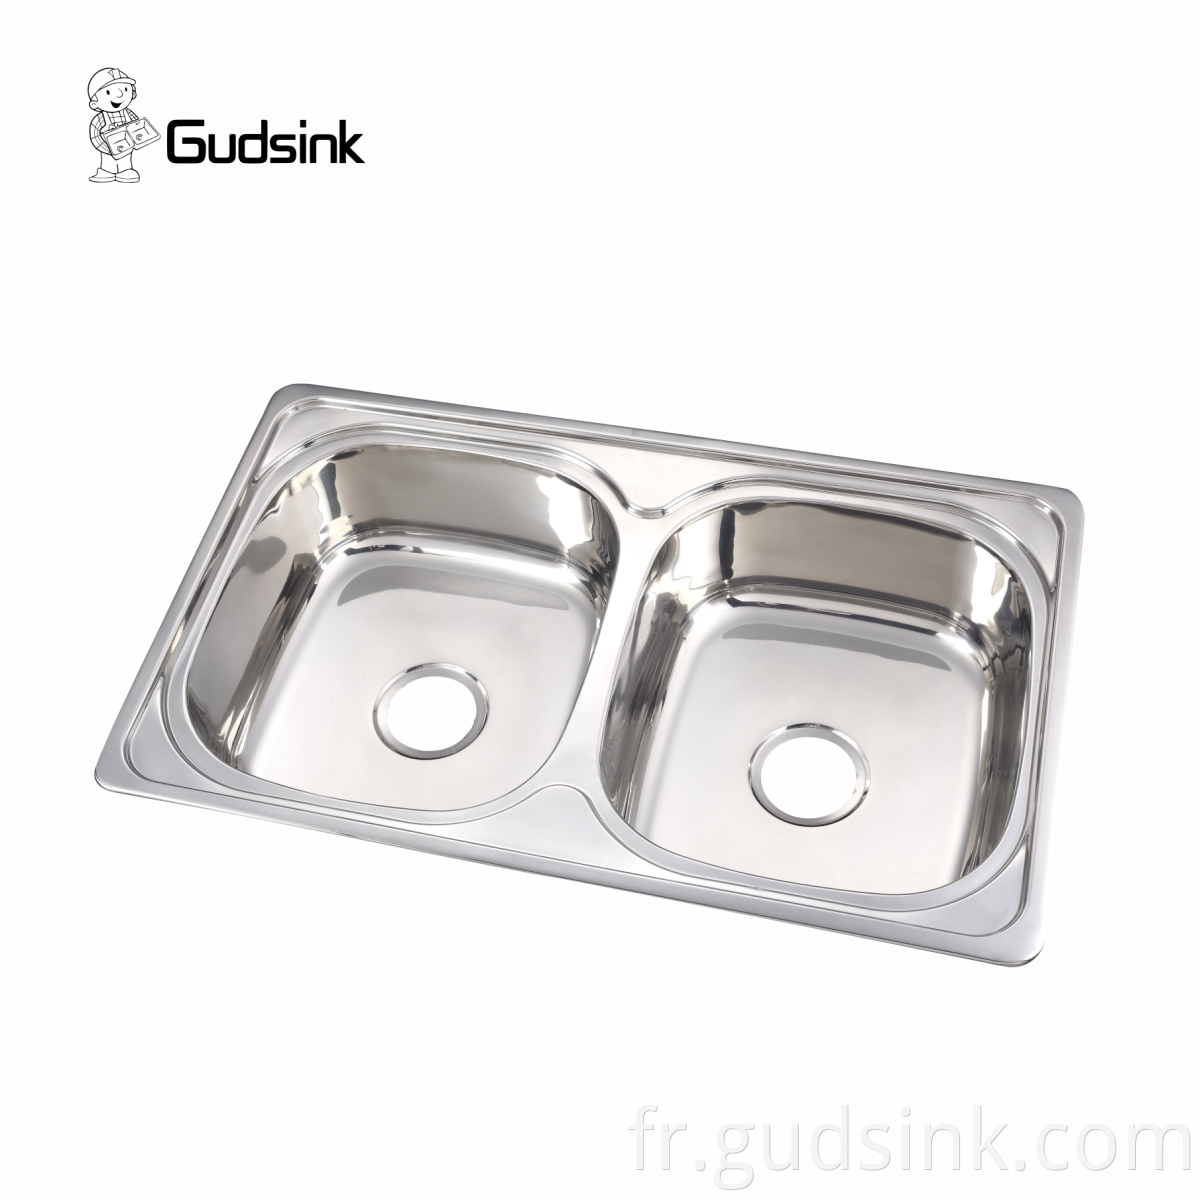 industrial stainless steel sink